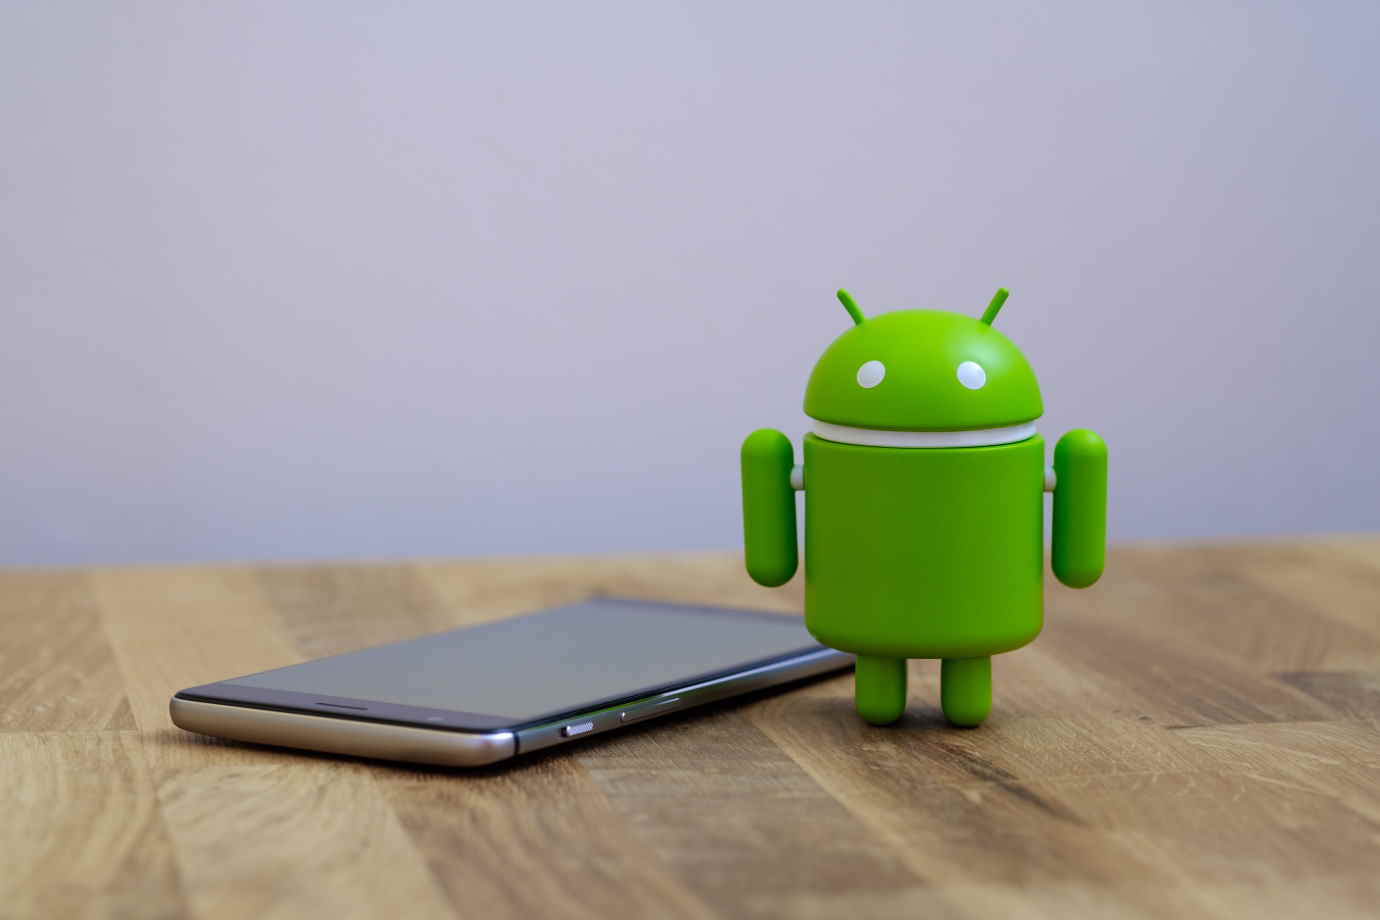 Android : mettez absolument à jour votre smartphone pour corriger cette faille critique